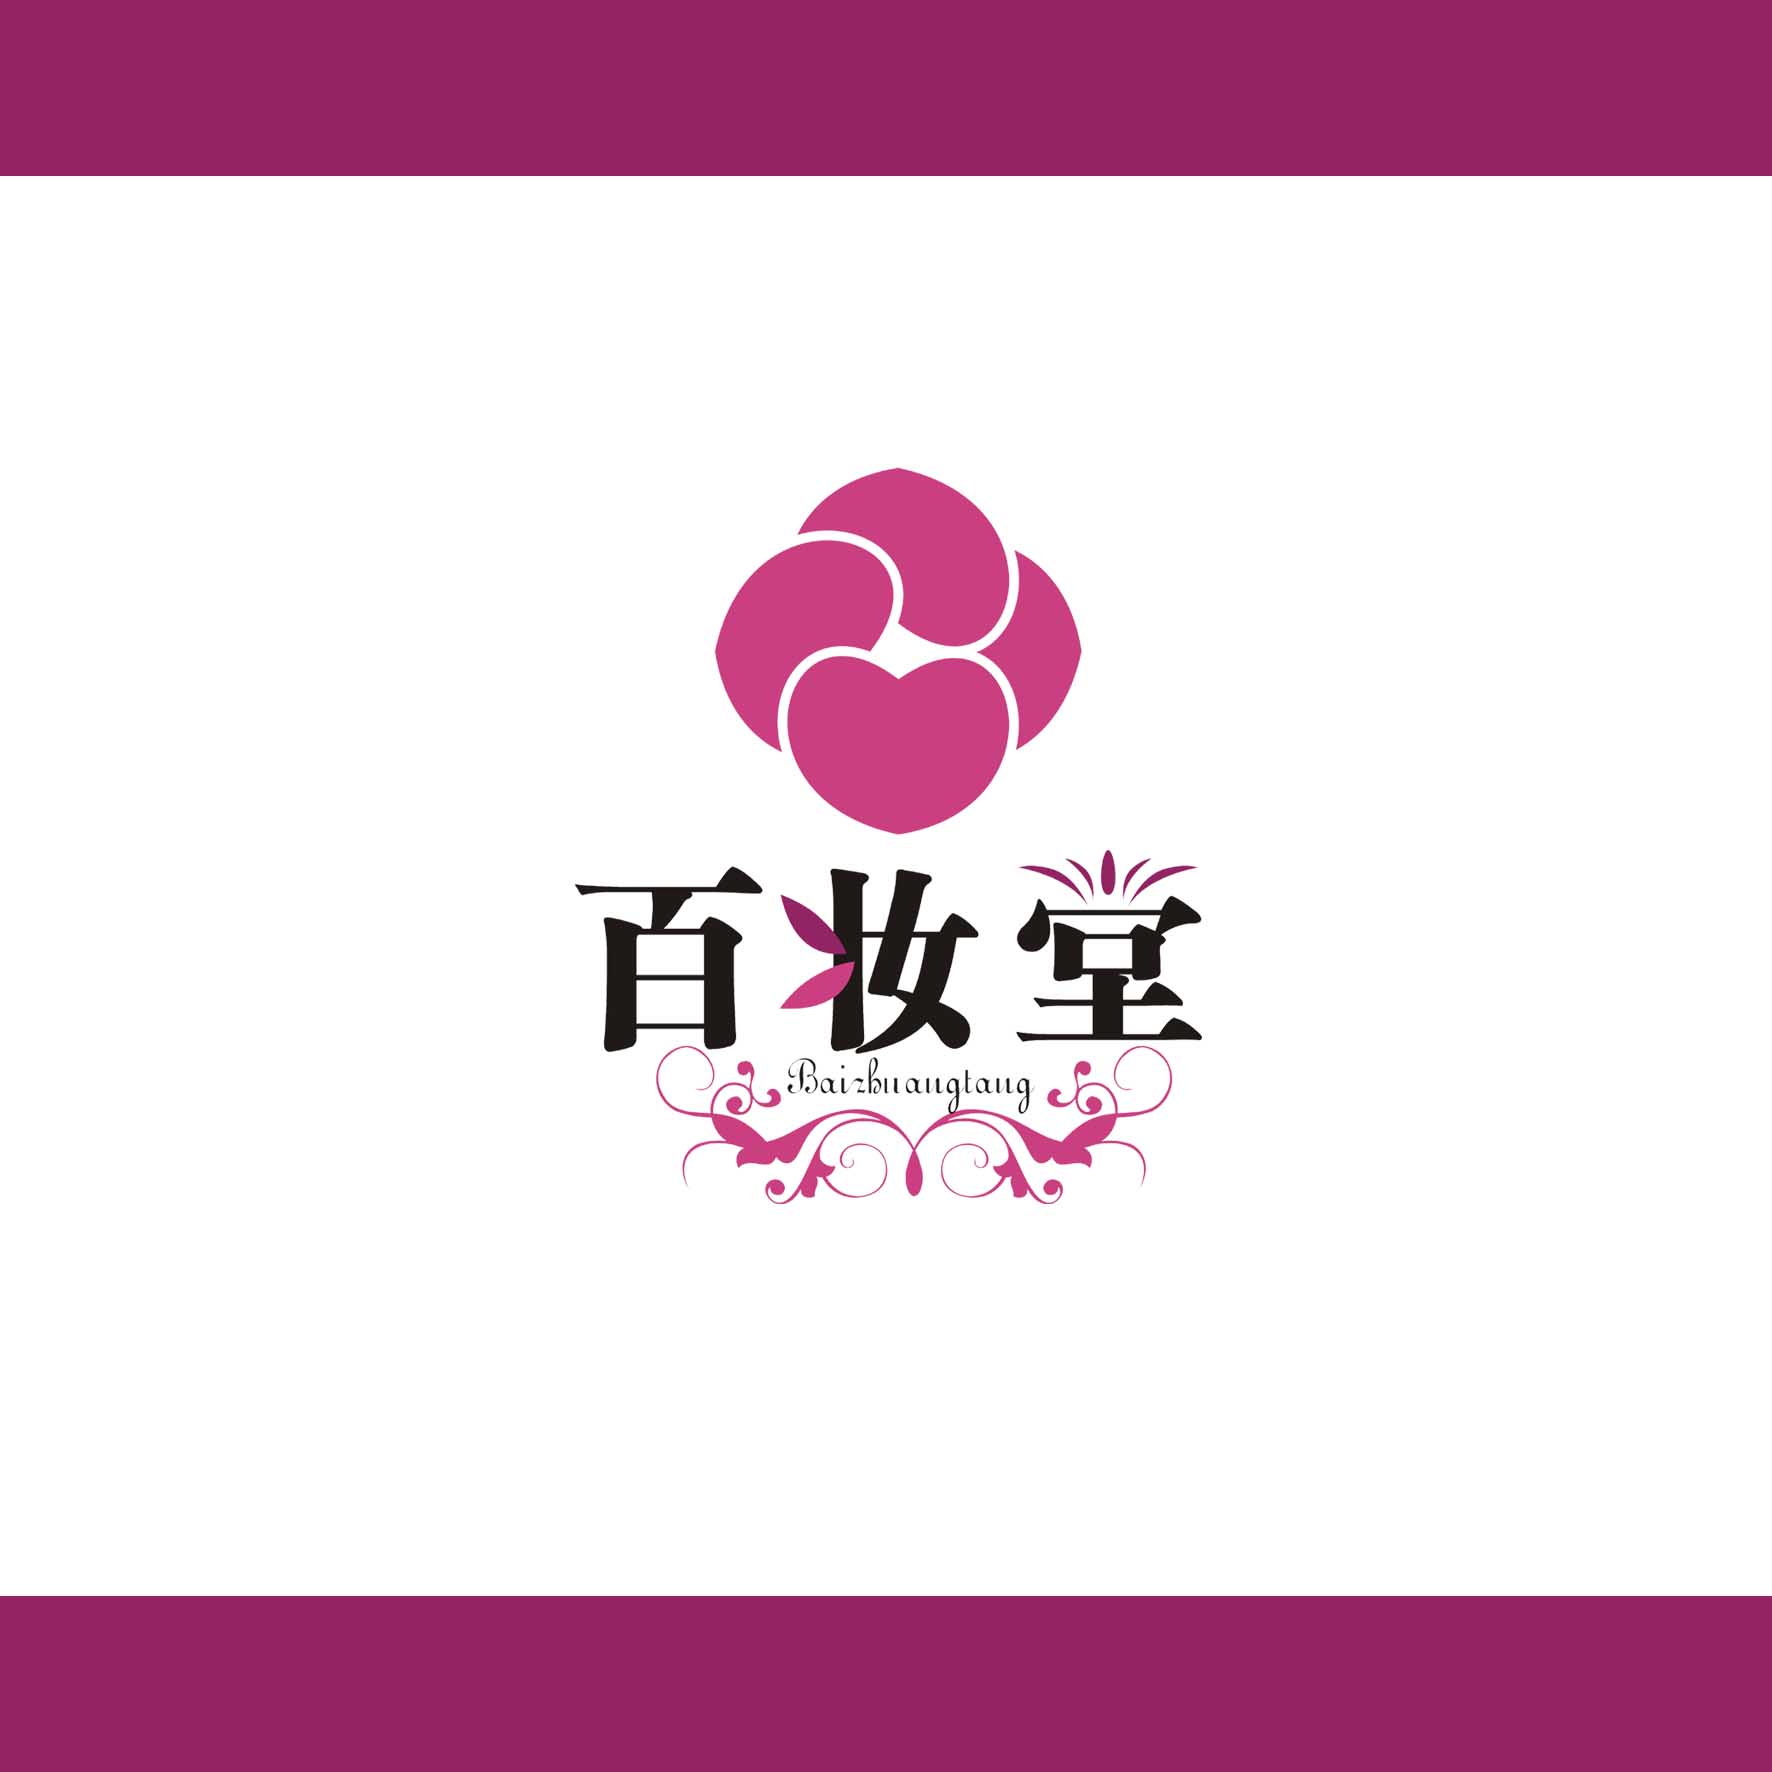 现金百妆堂化妆品店的logo和招牌设计.急!